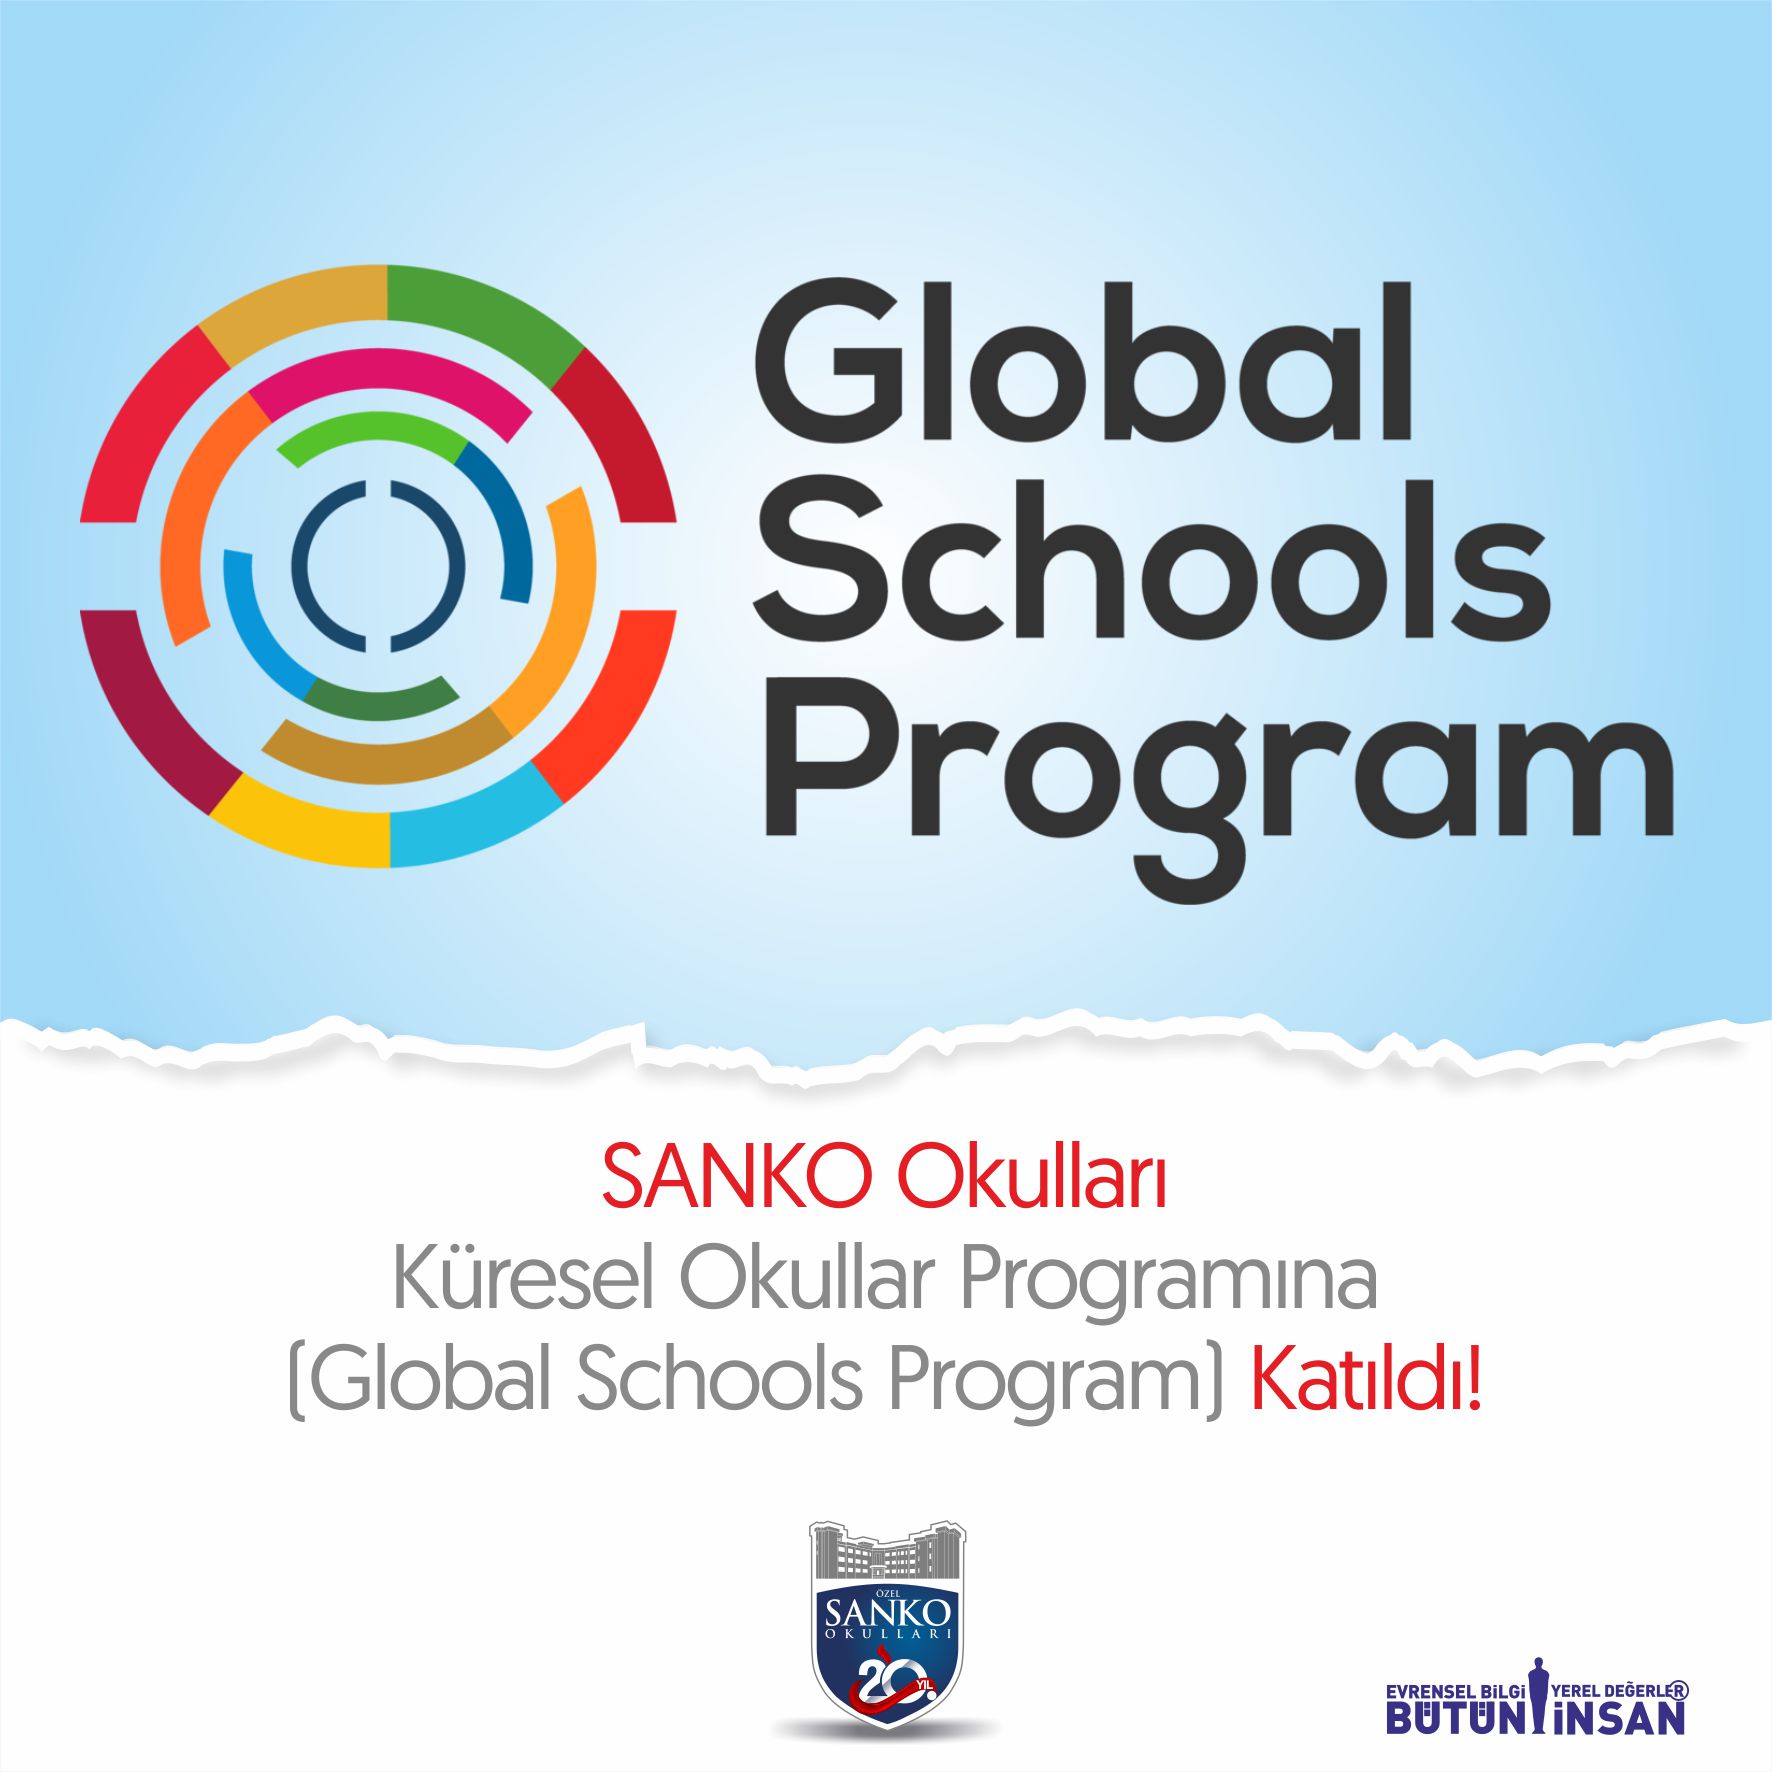 SANKO OKULLARI KÜRESEL OKULLAR PROGRAMINA (GLOBAL SCHOOLS PROGRAM) KATILDI!